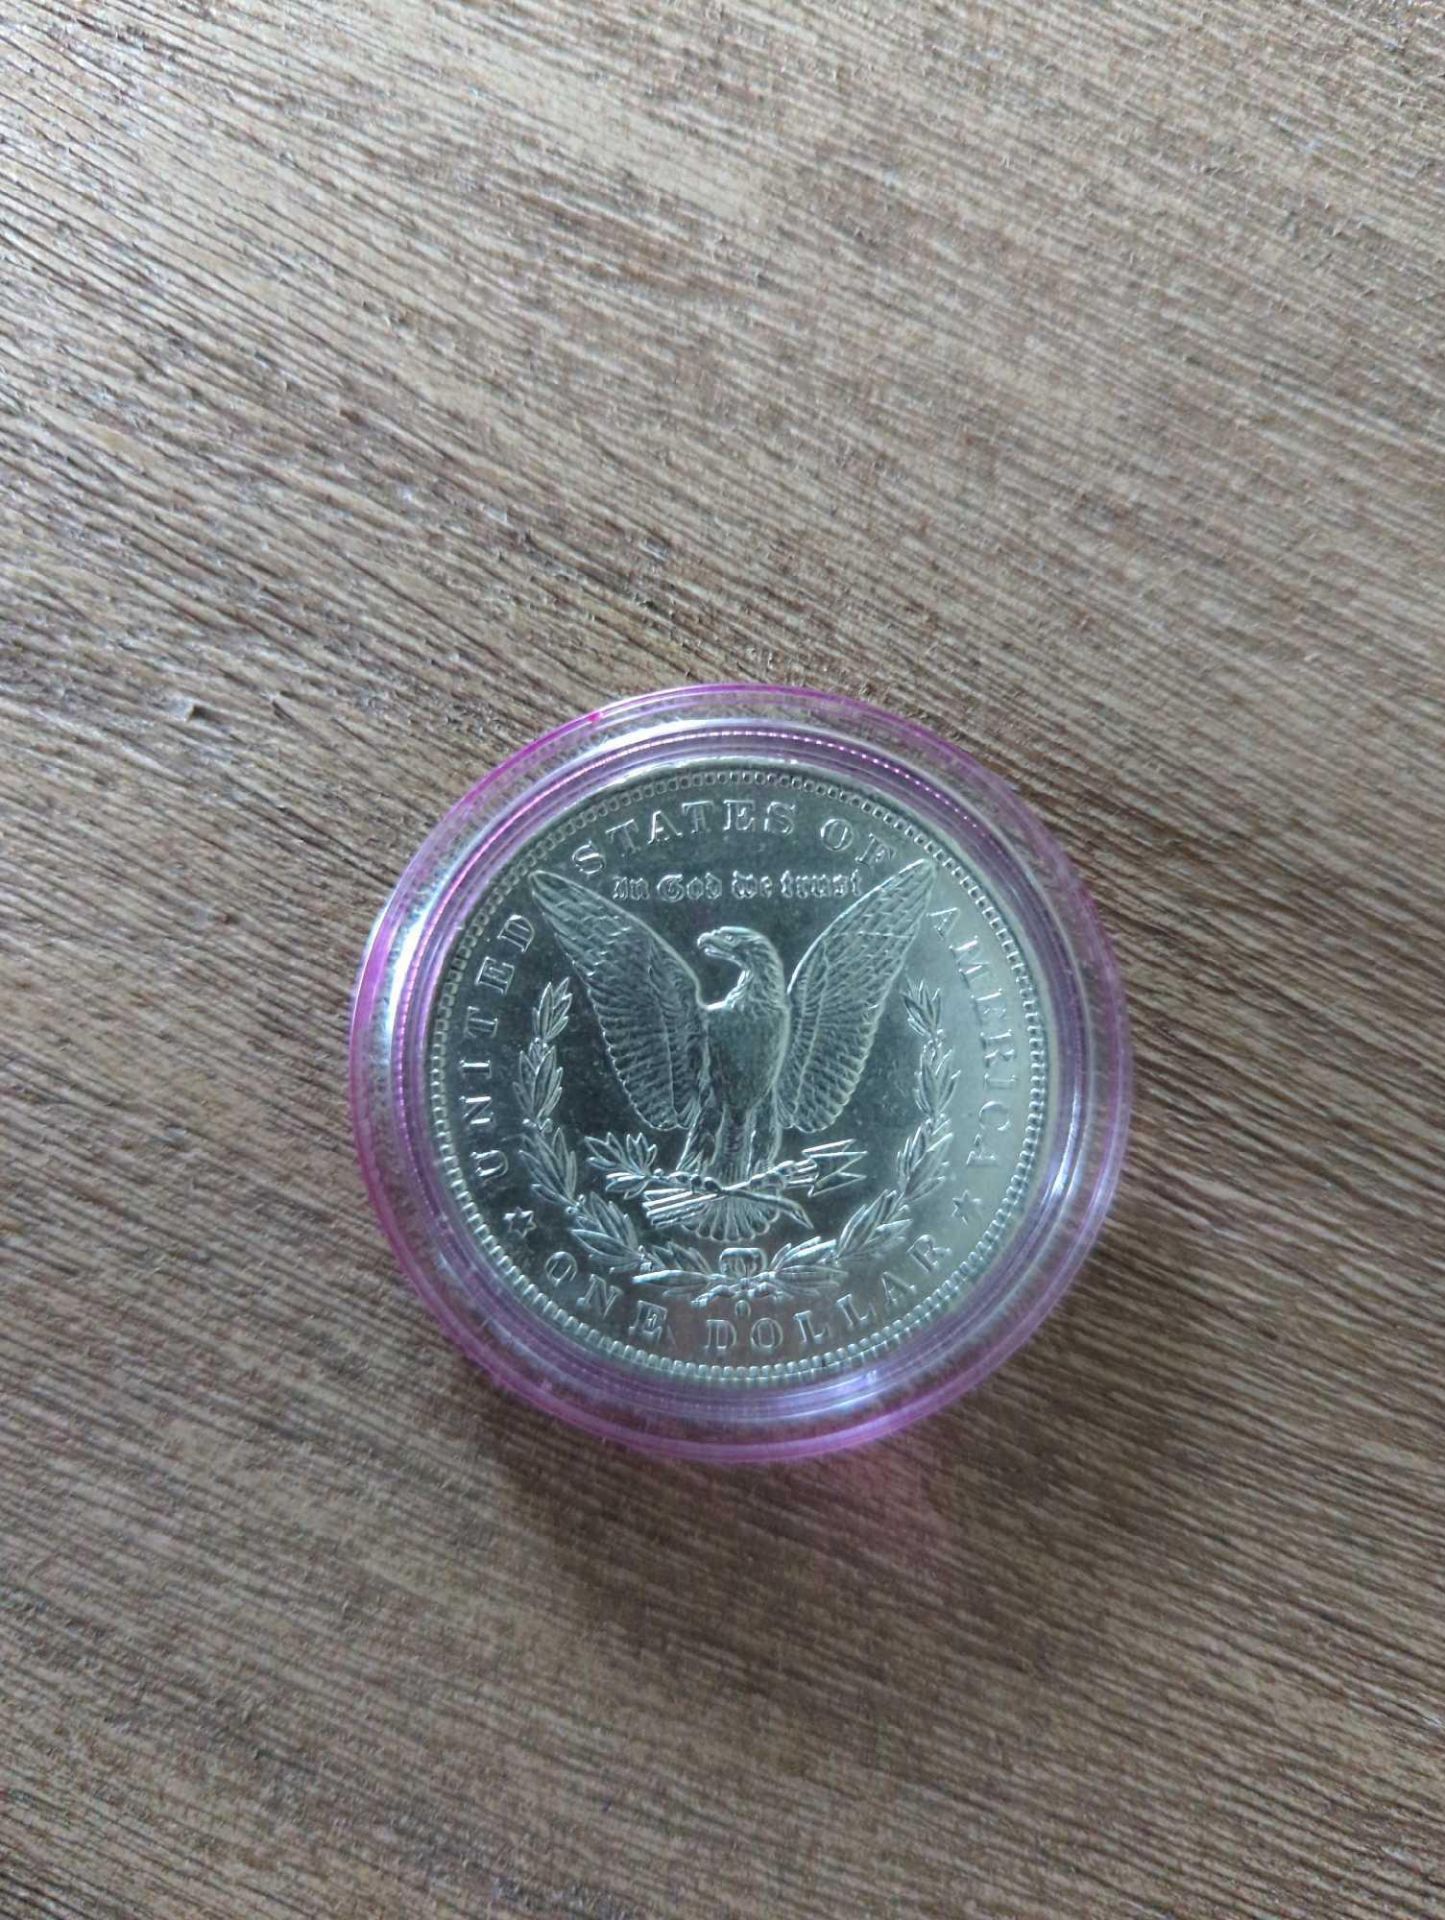 1883 VF Morgan Dollar - Image 2 of 3